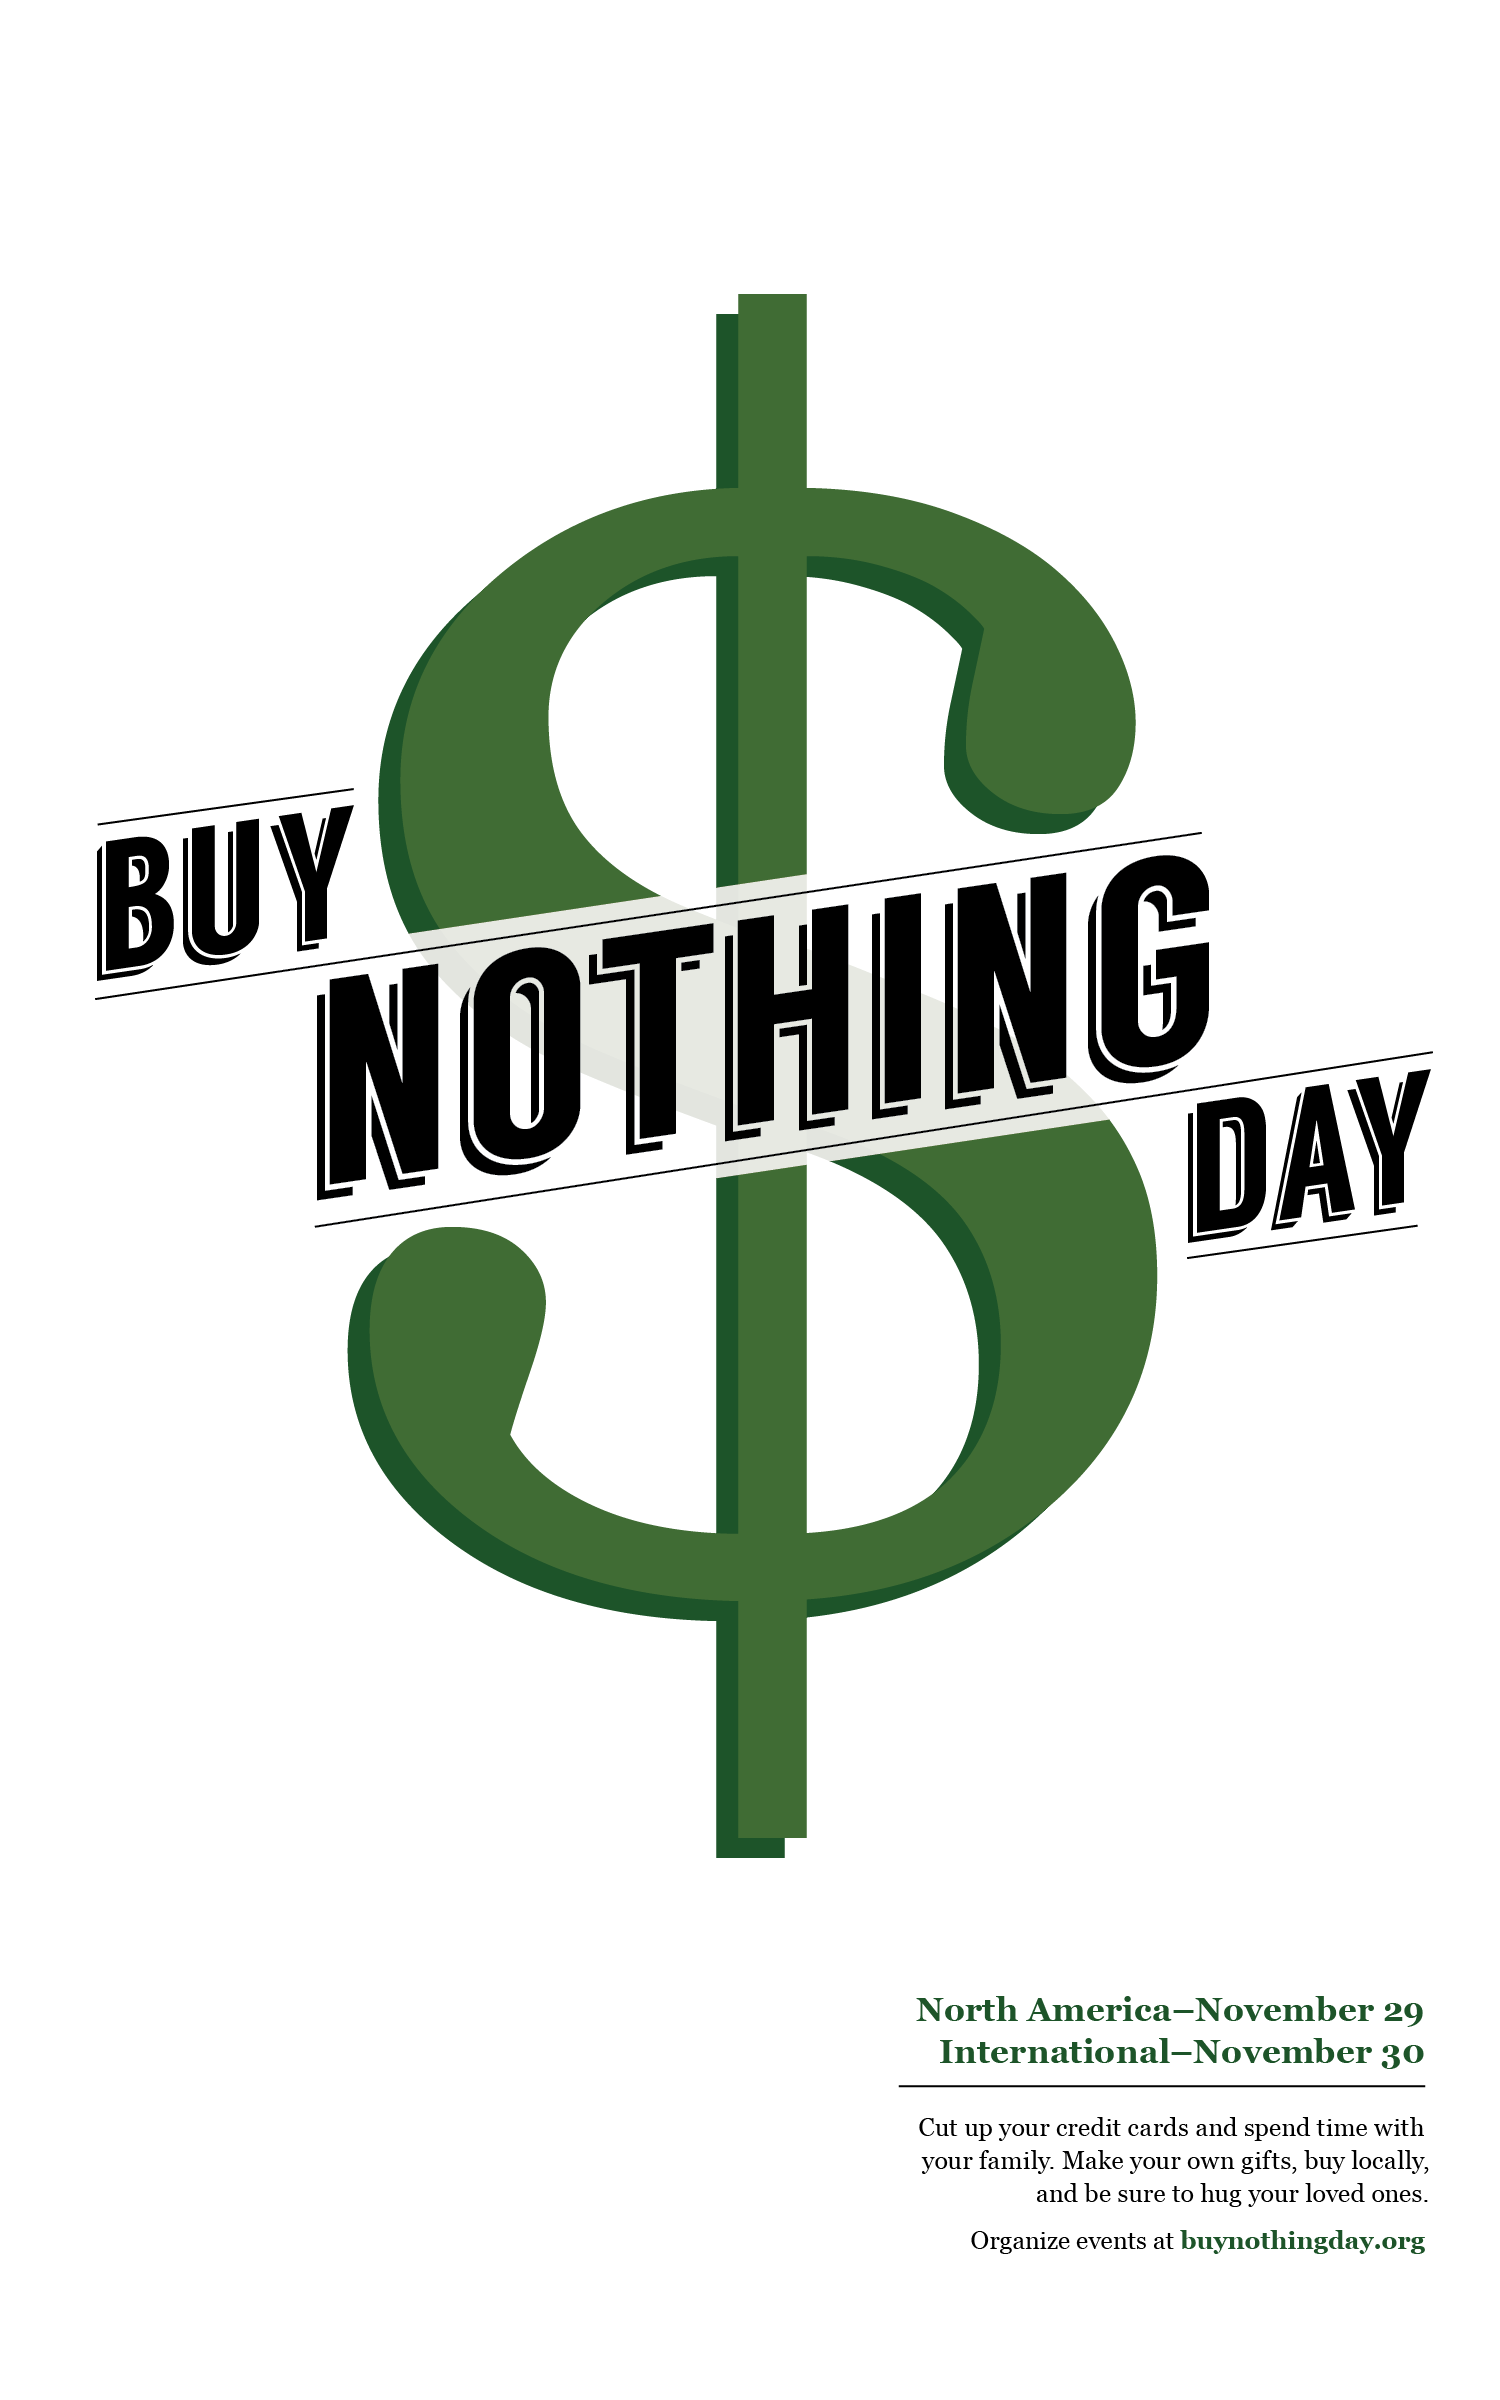 Buy Nothing Day Alex Jordan Design